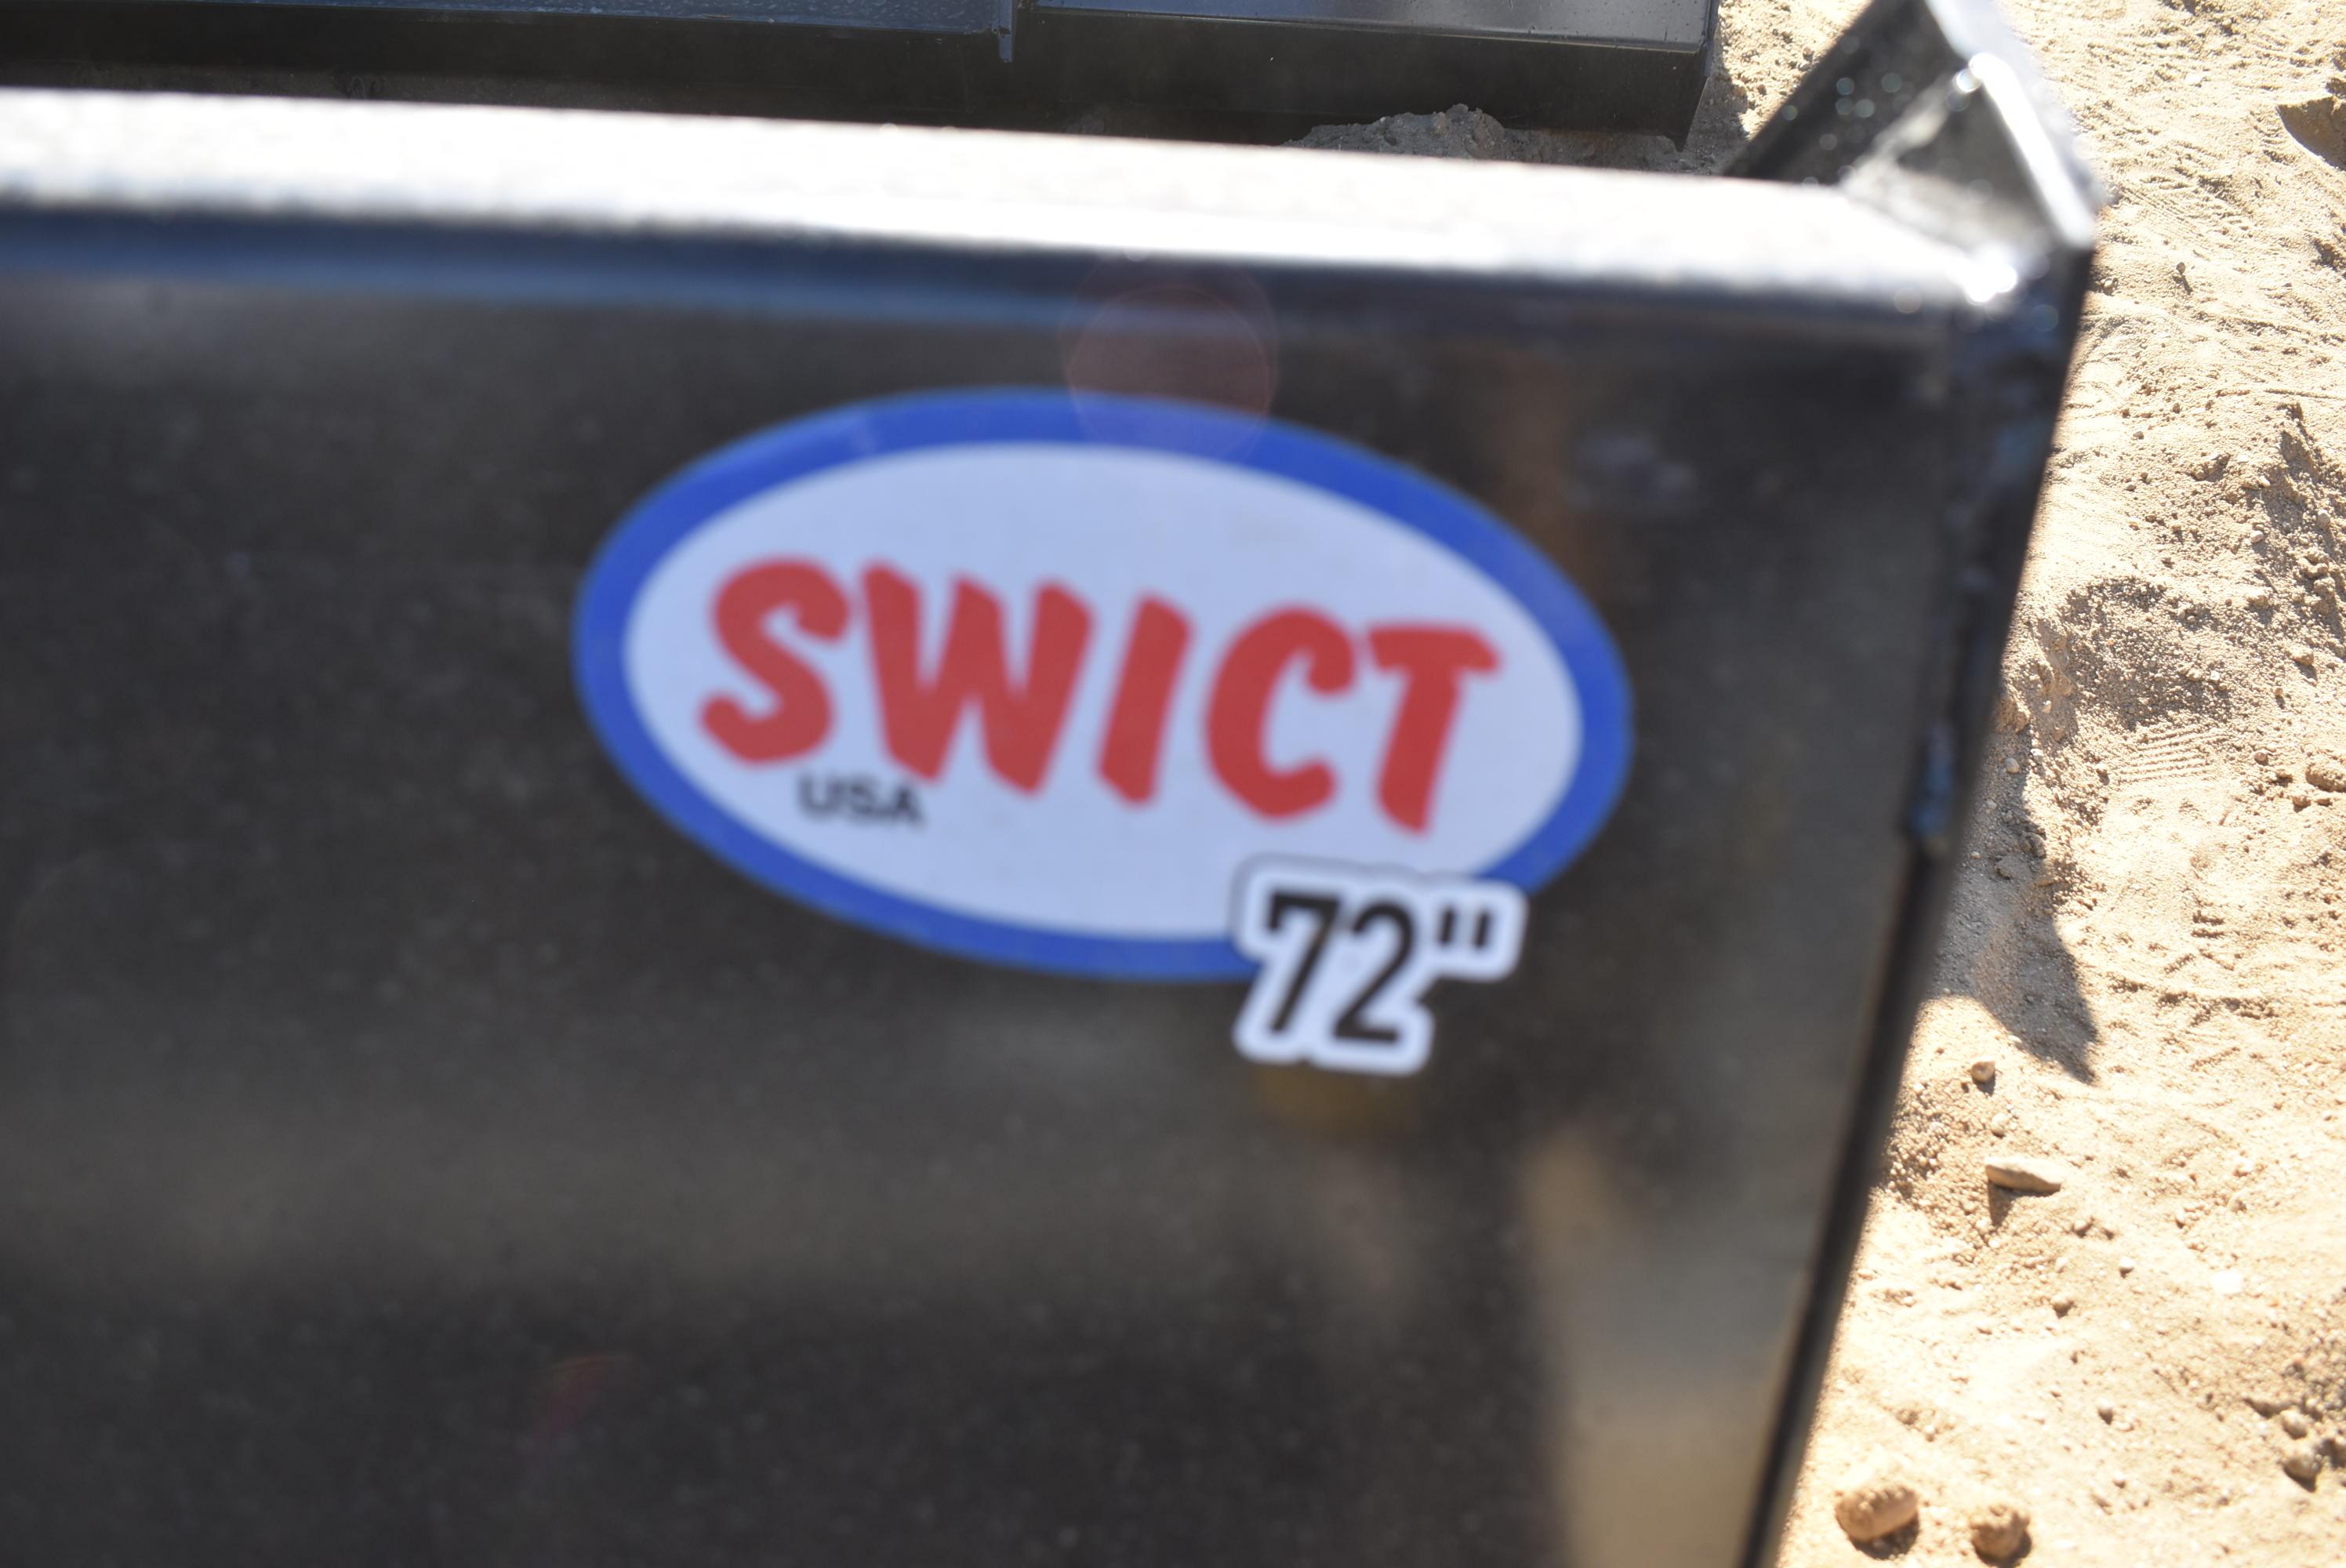 Swict 72" bucket skid steer attachment